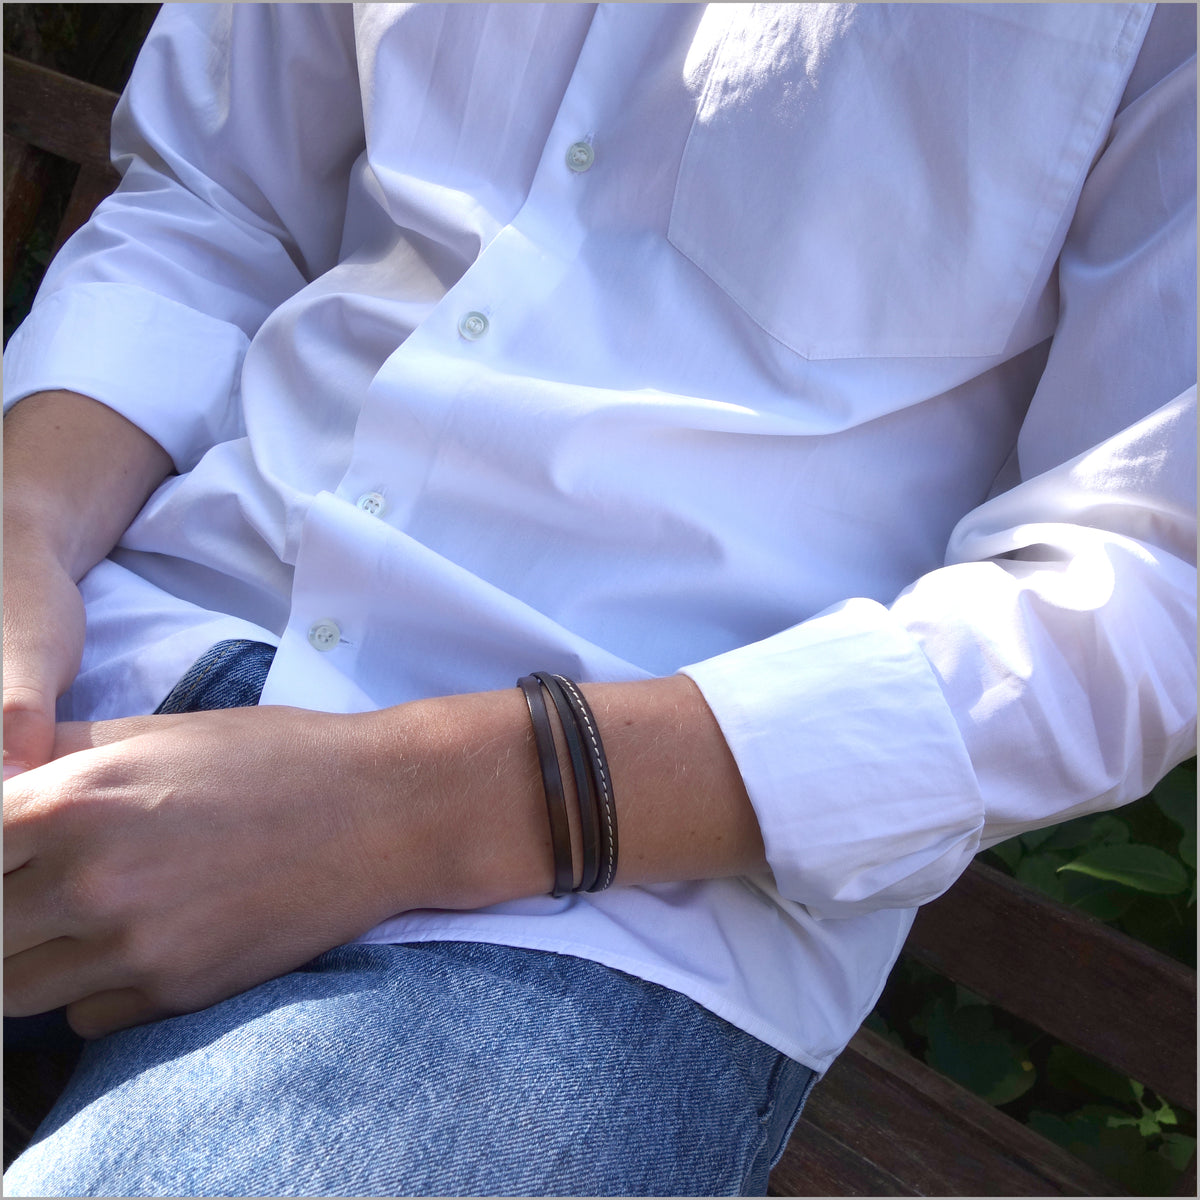 Brown leather multi-link bracelet